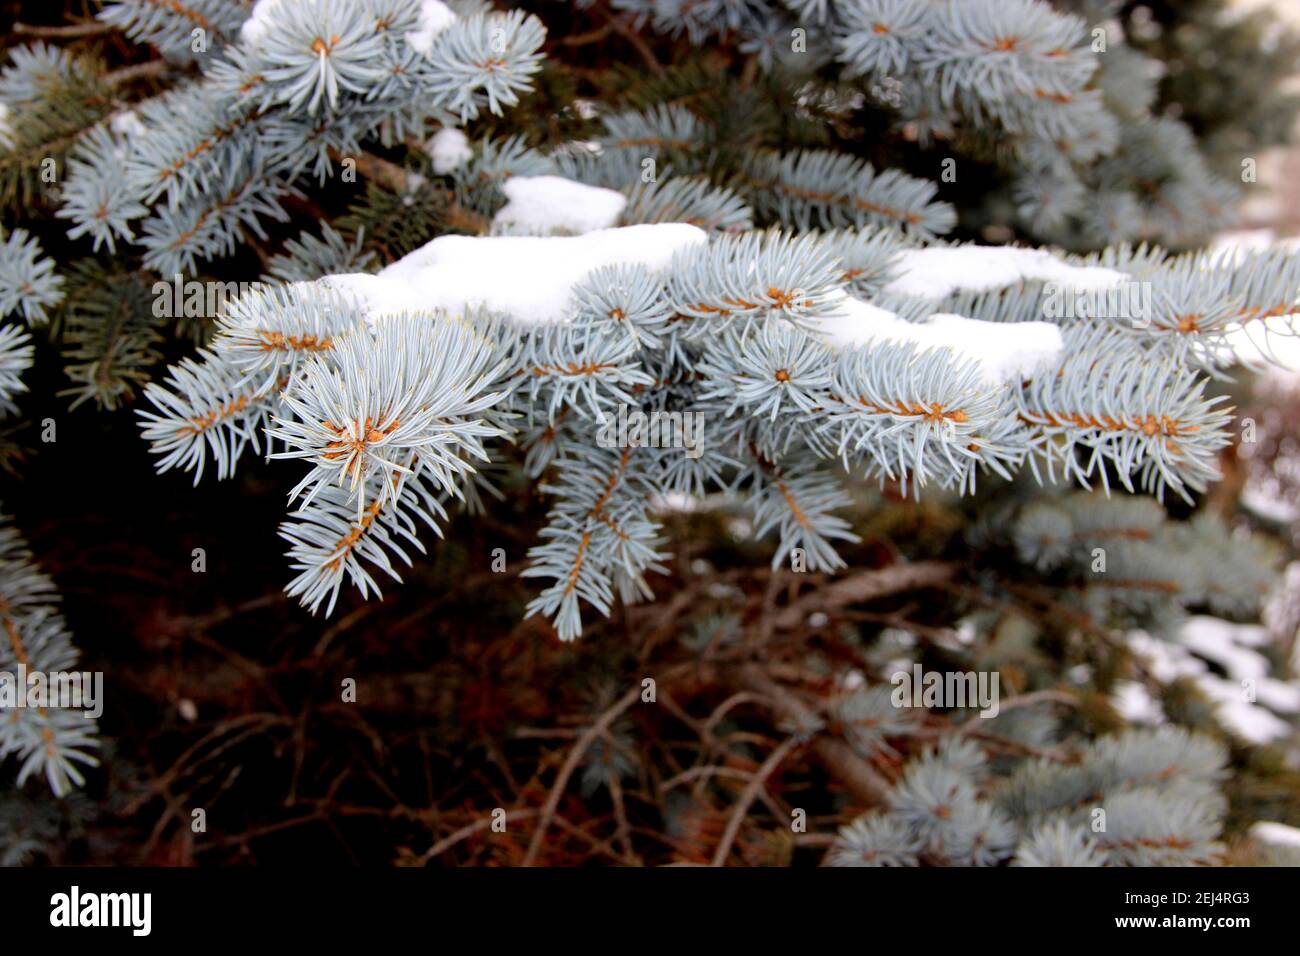 Primo piano mostra un ramo di abete rosso con un cappuccio da neve. L'insolito colore turchese degli aghi è grande. Foto Stock